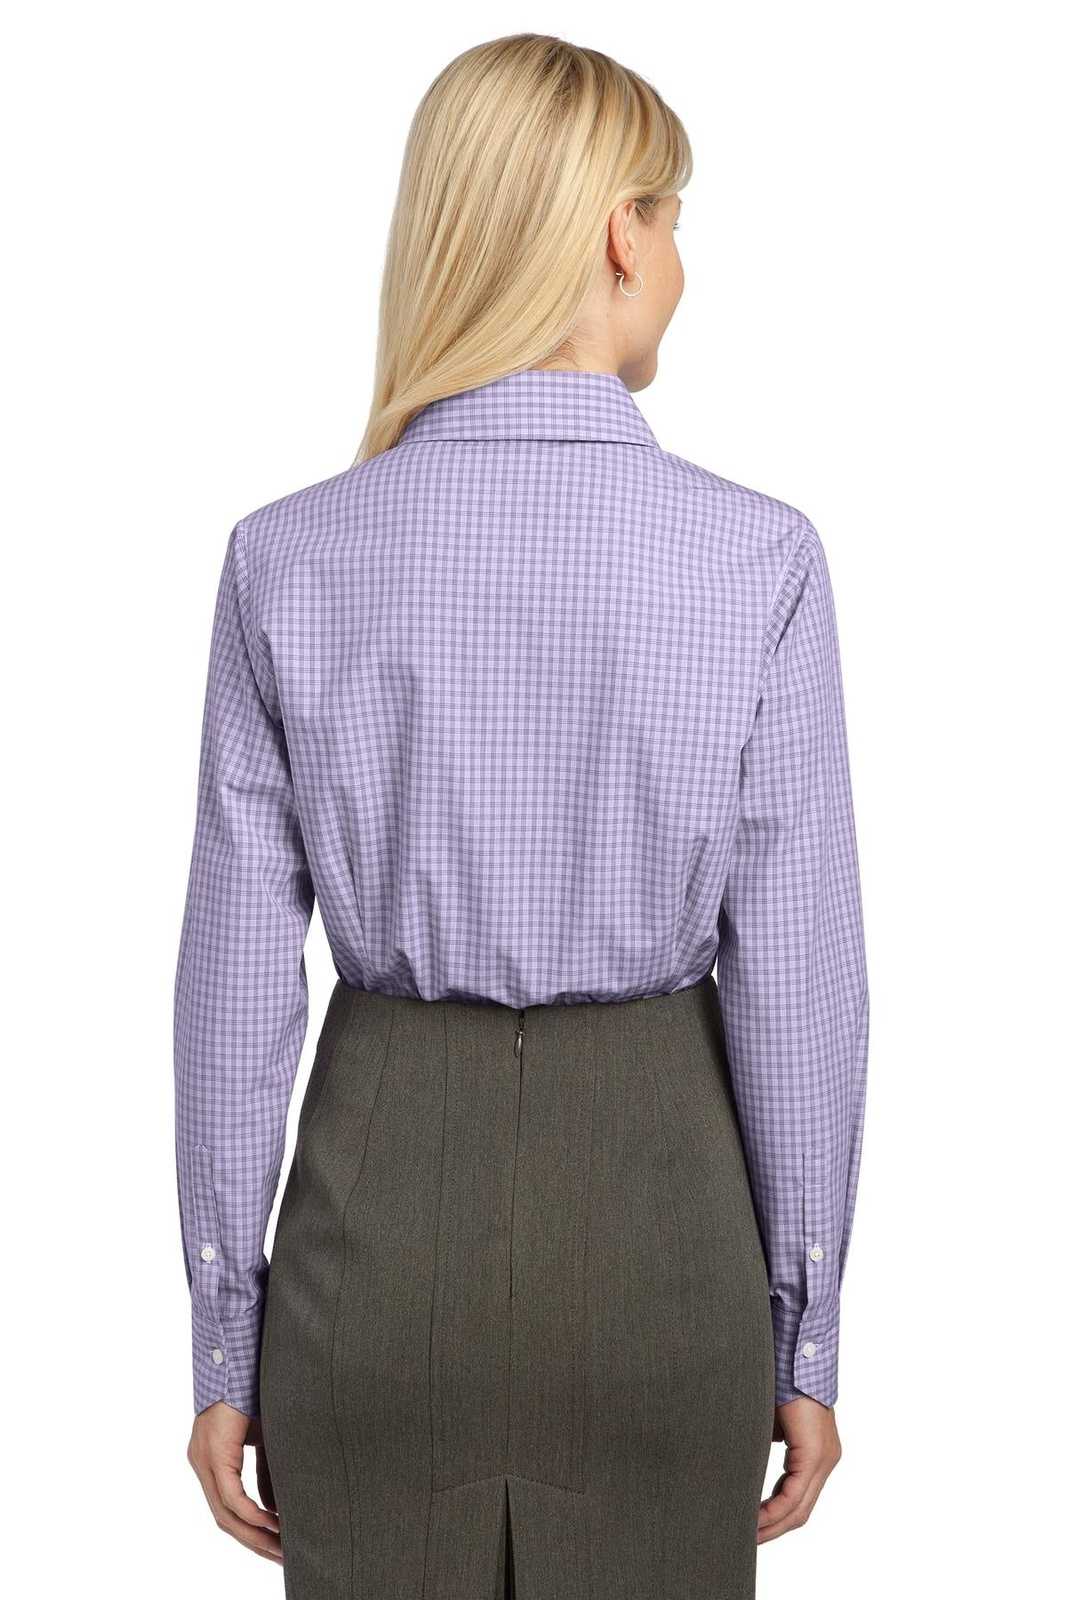 Port Authority L639 Ladies Plaid Pattern Easy Care Shirt - Purple - HIT a Double - 1